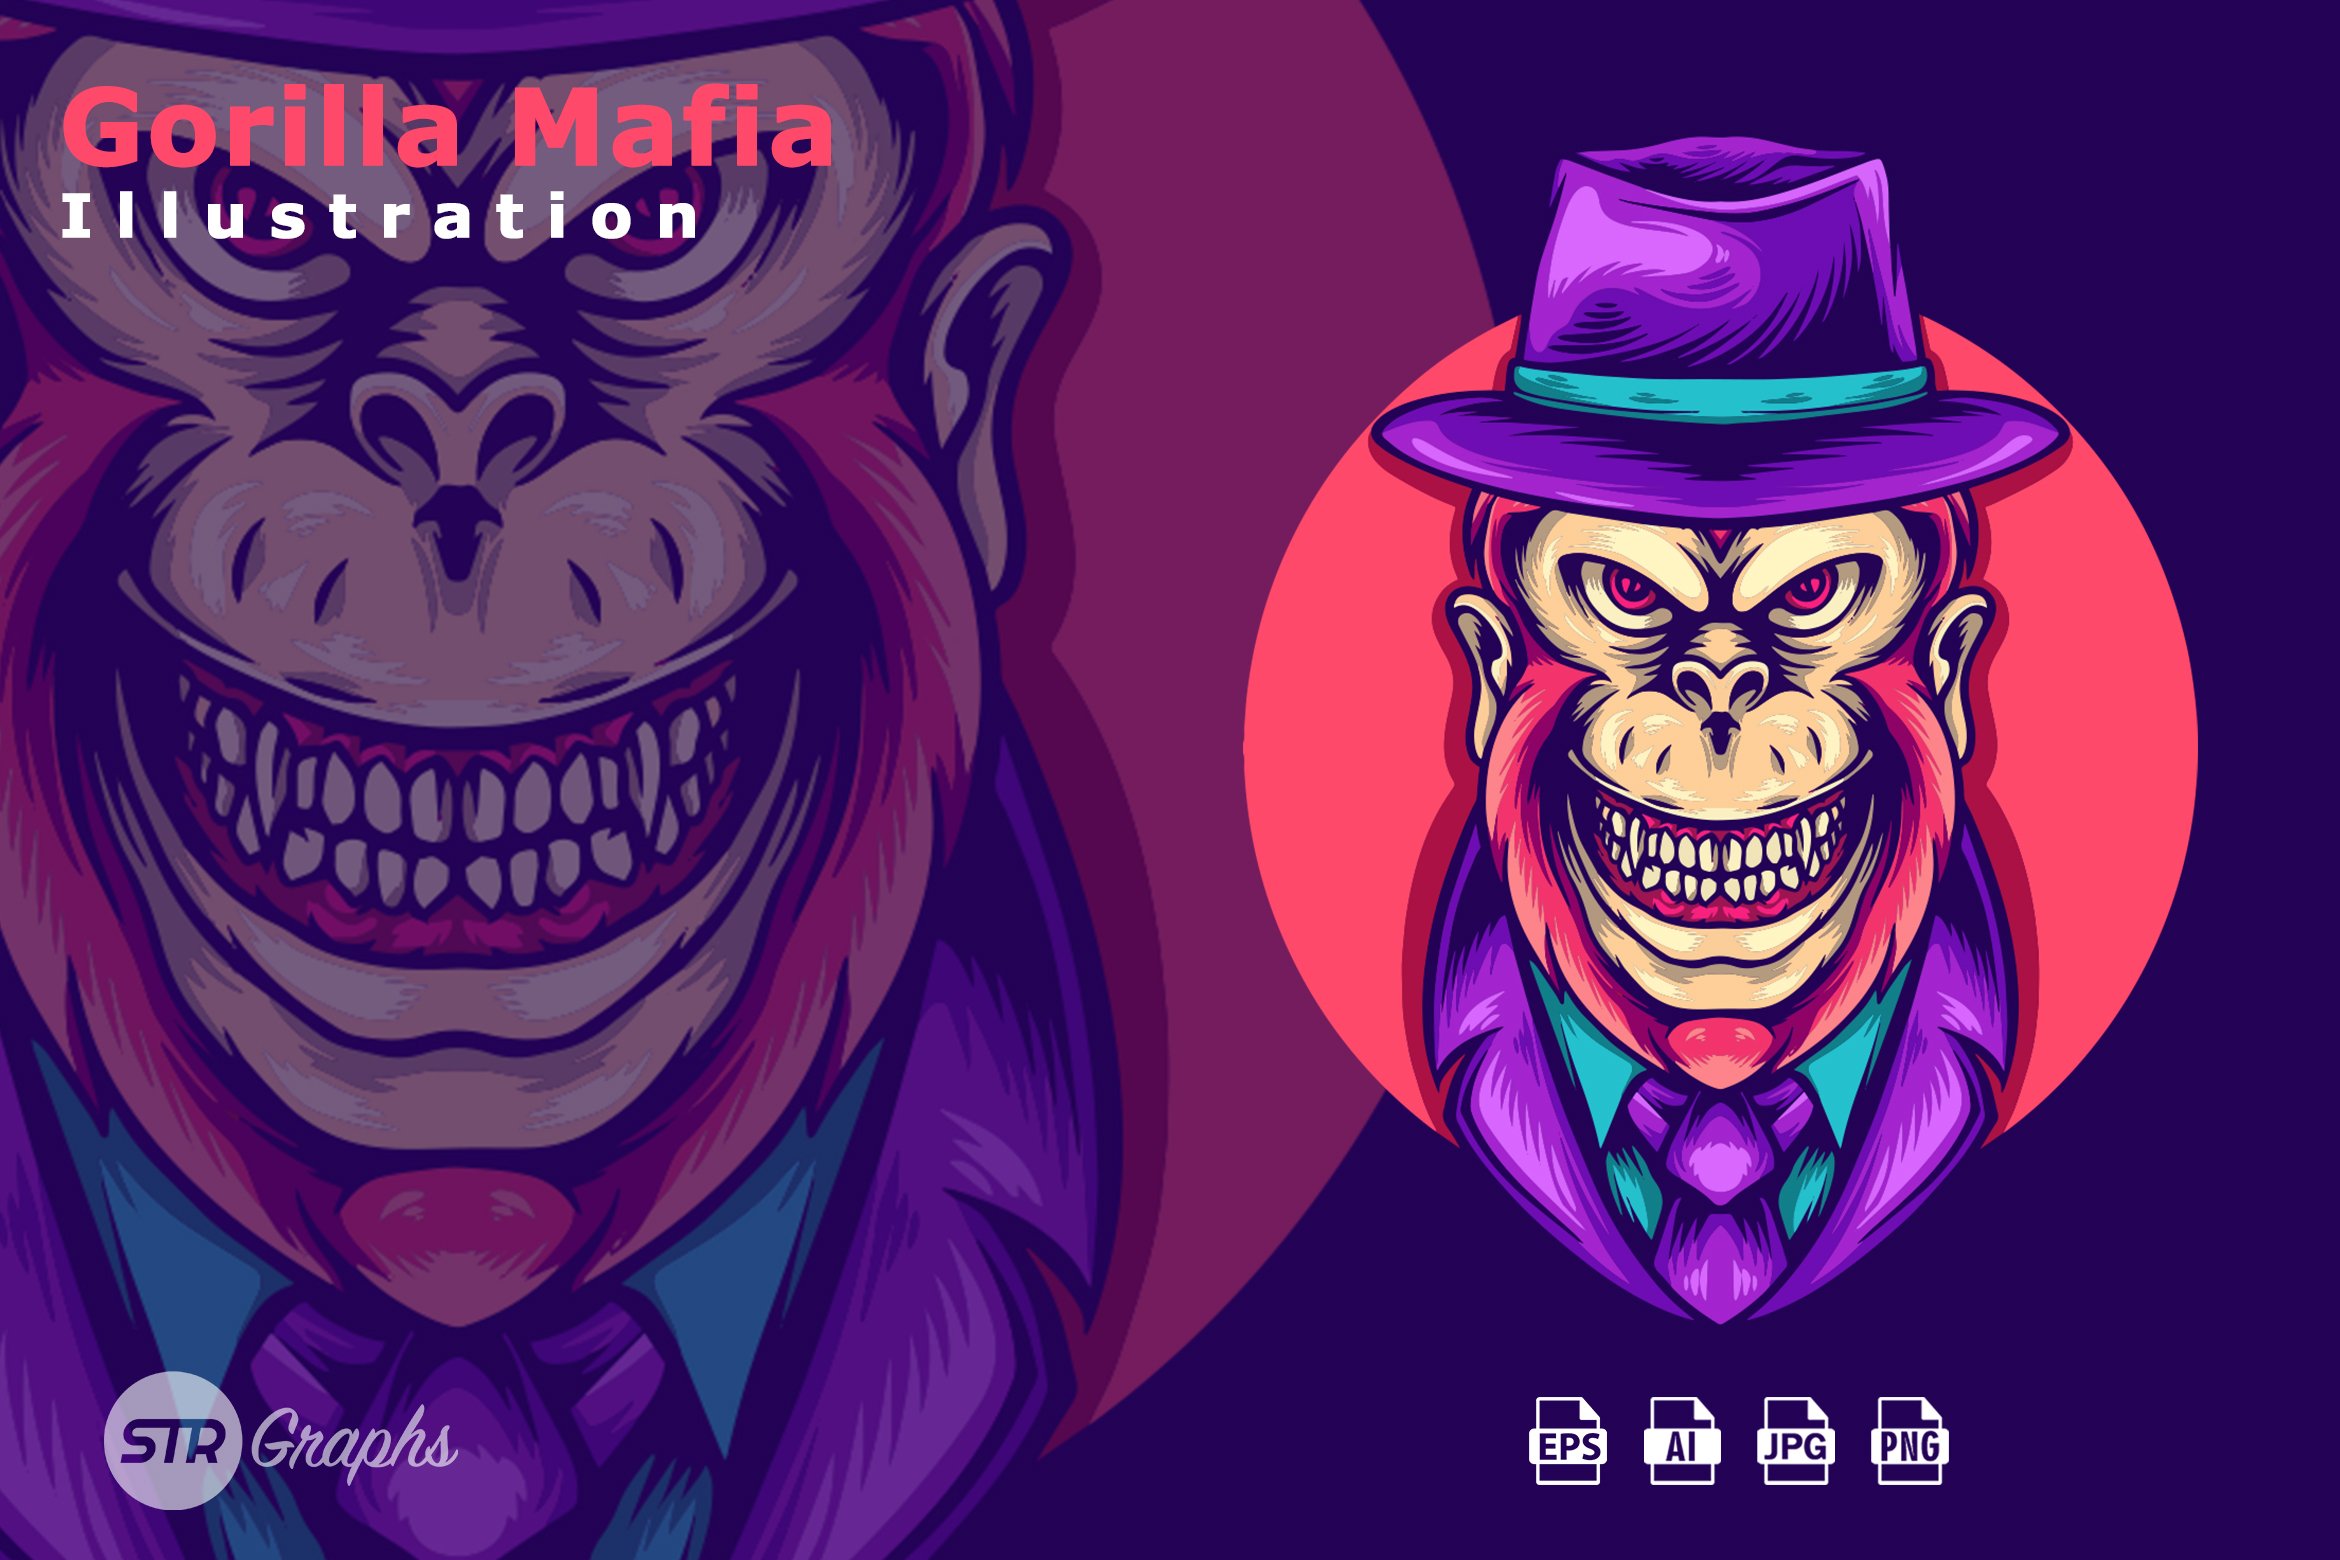 Gorilla Mafia Illustration cover image.